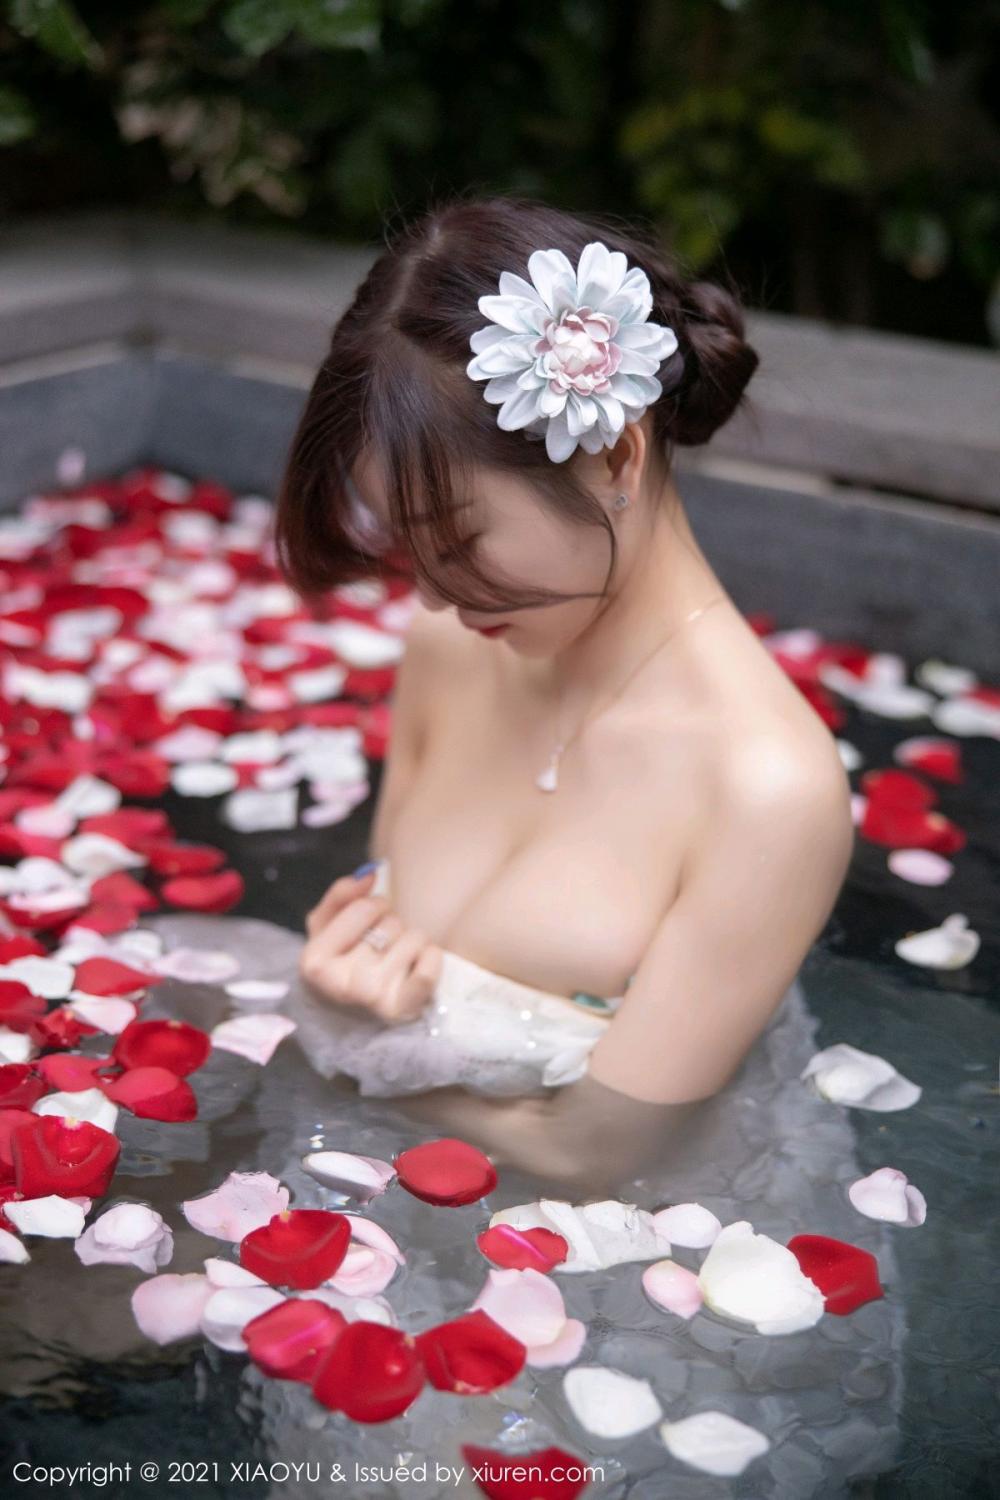 XiaoYu Vol. 528 Yang Chen Chen Petal Bath